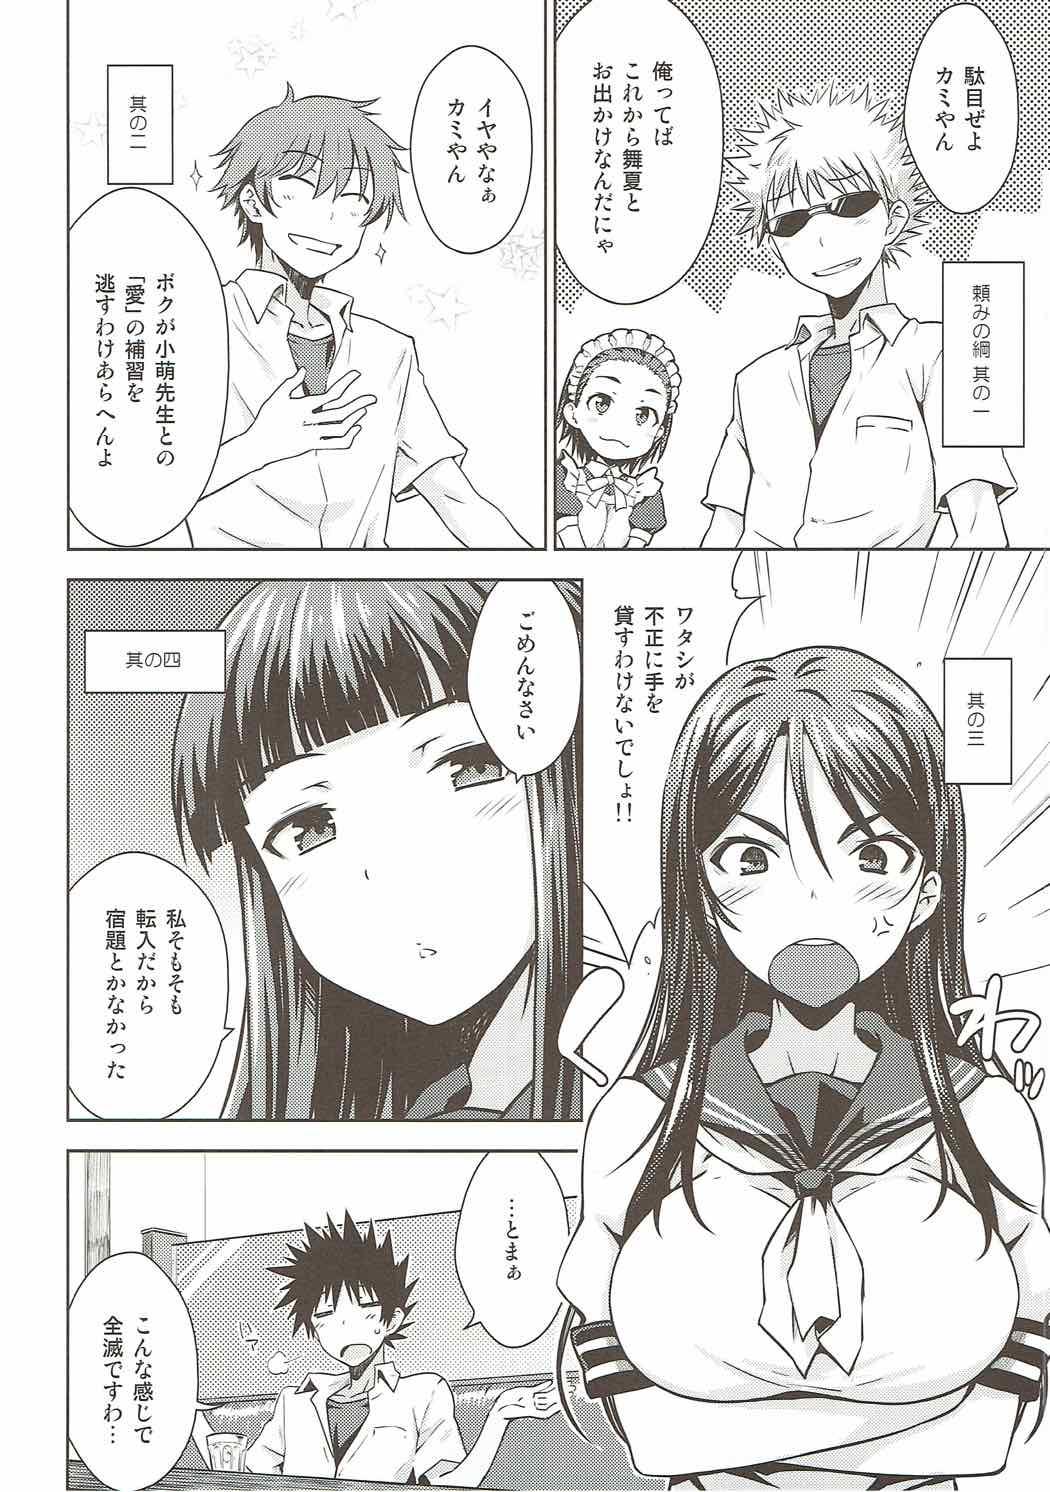 Milk Natsuyasumi no Shukudai - Toaru kagaku no railgun Boquete - Page 5